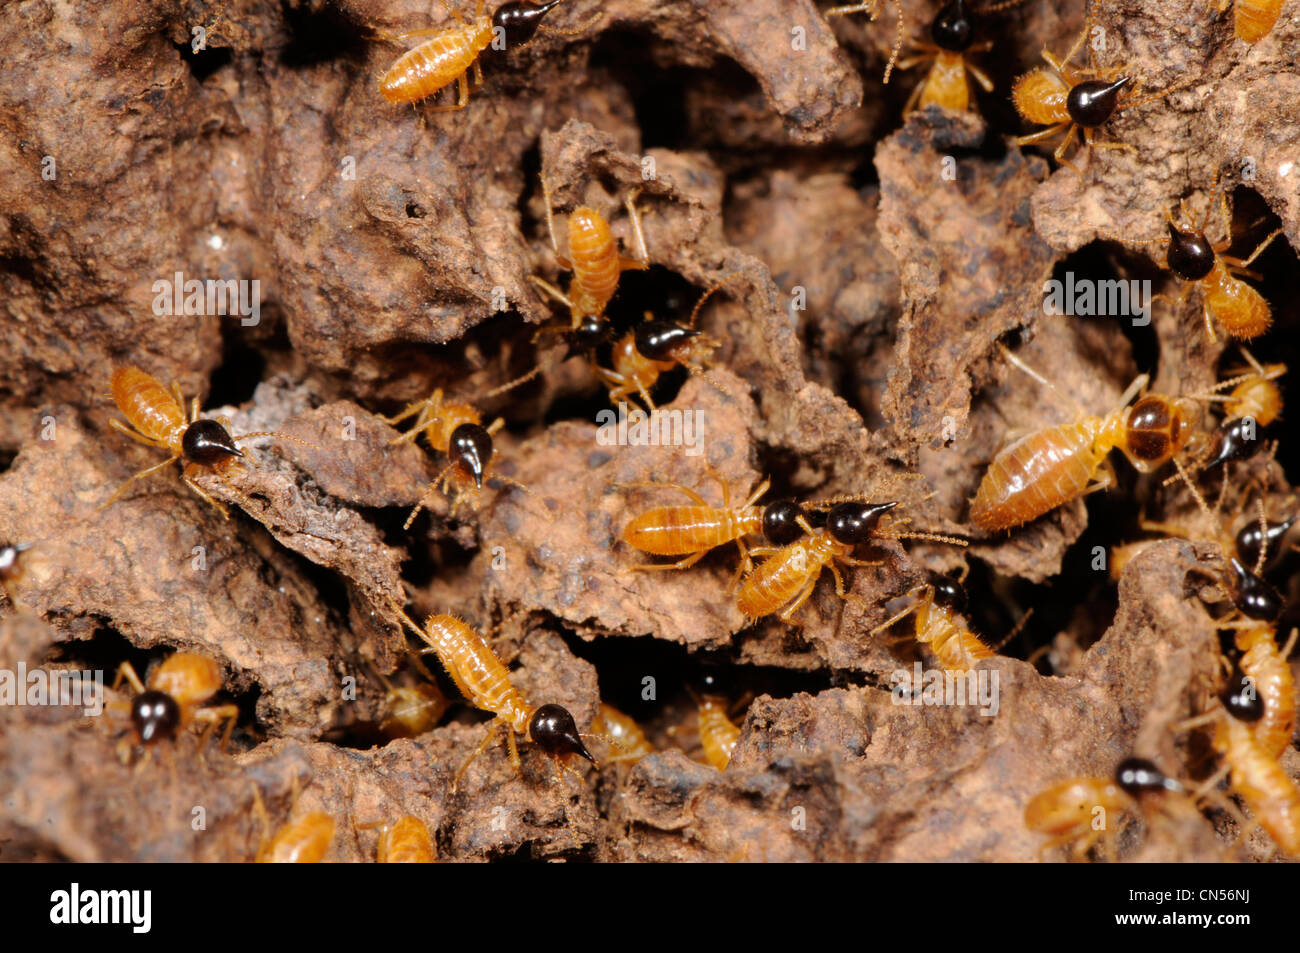 Les termites Nasutitermes, photographié au Mexique Banque D'Images